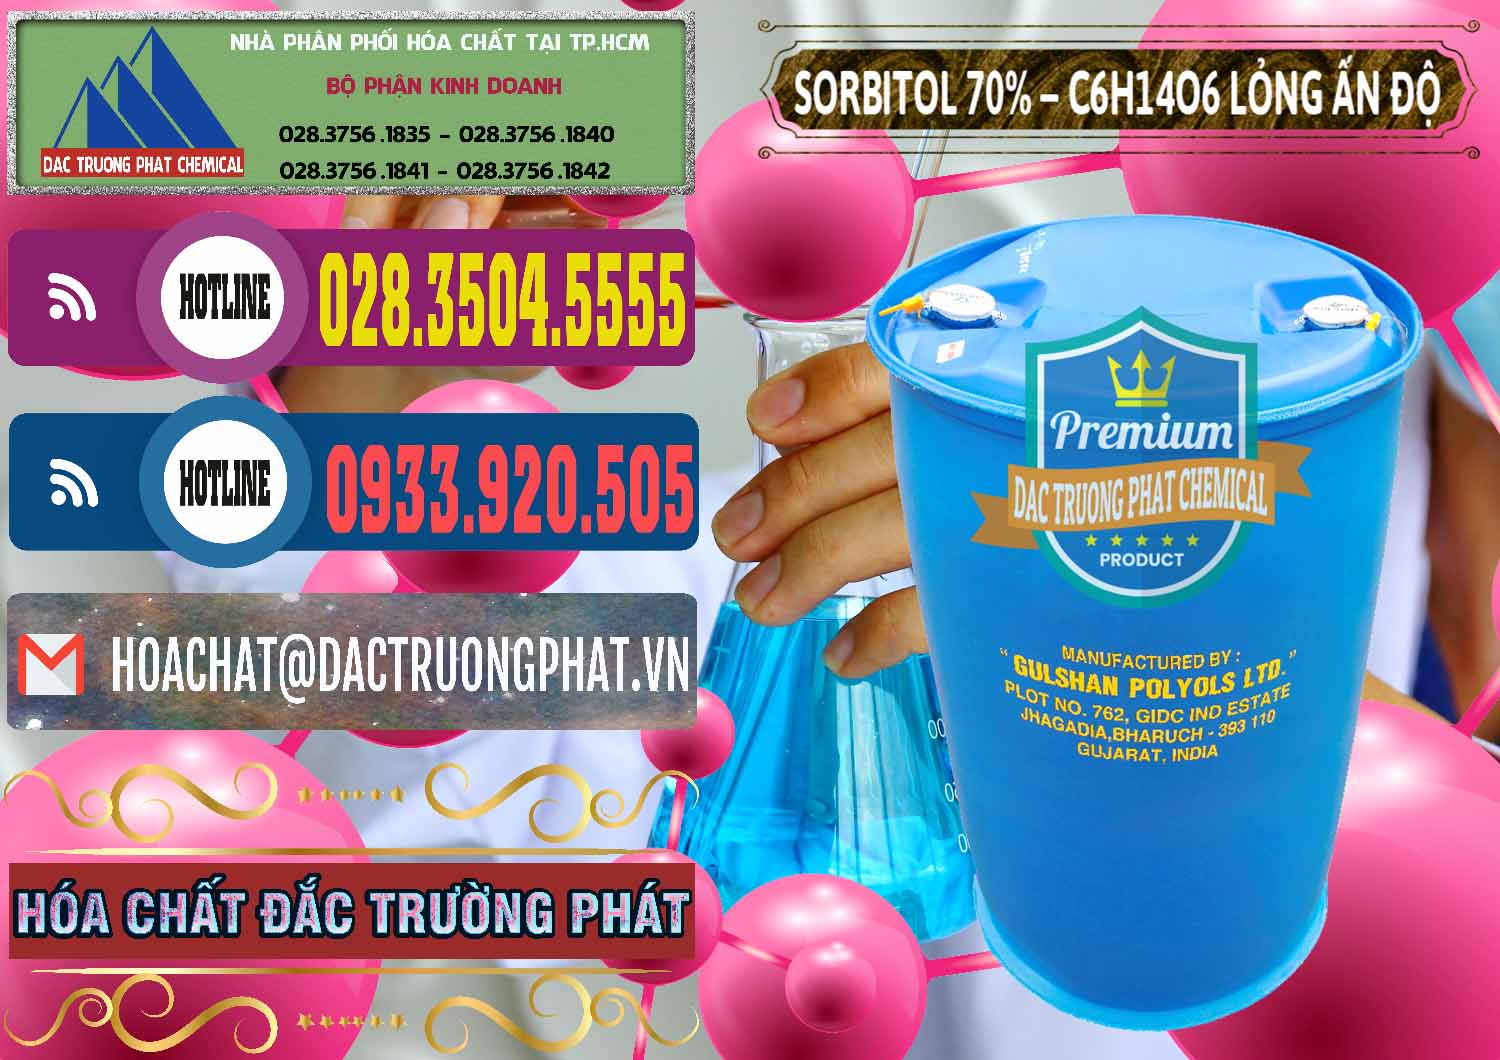 Cty bán - cung cấp Sorbitol - C6H14O6 Lỏng 70% Food Grade Ấn Độ India - 0152 - Kinh doanh ( phân phối ) hóa chất tại TP.HCM - muabanhoachat.com.vn